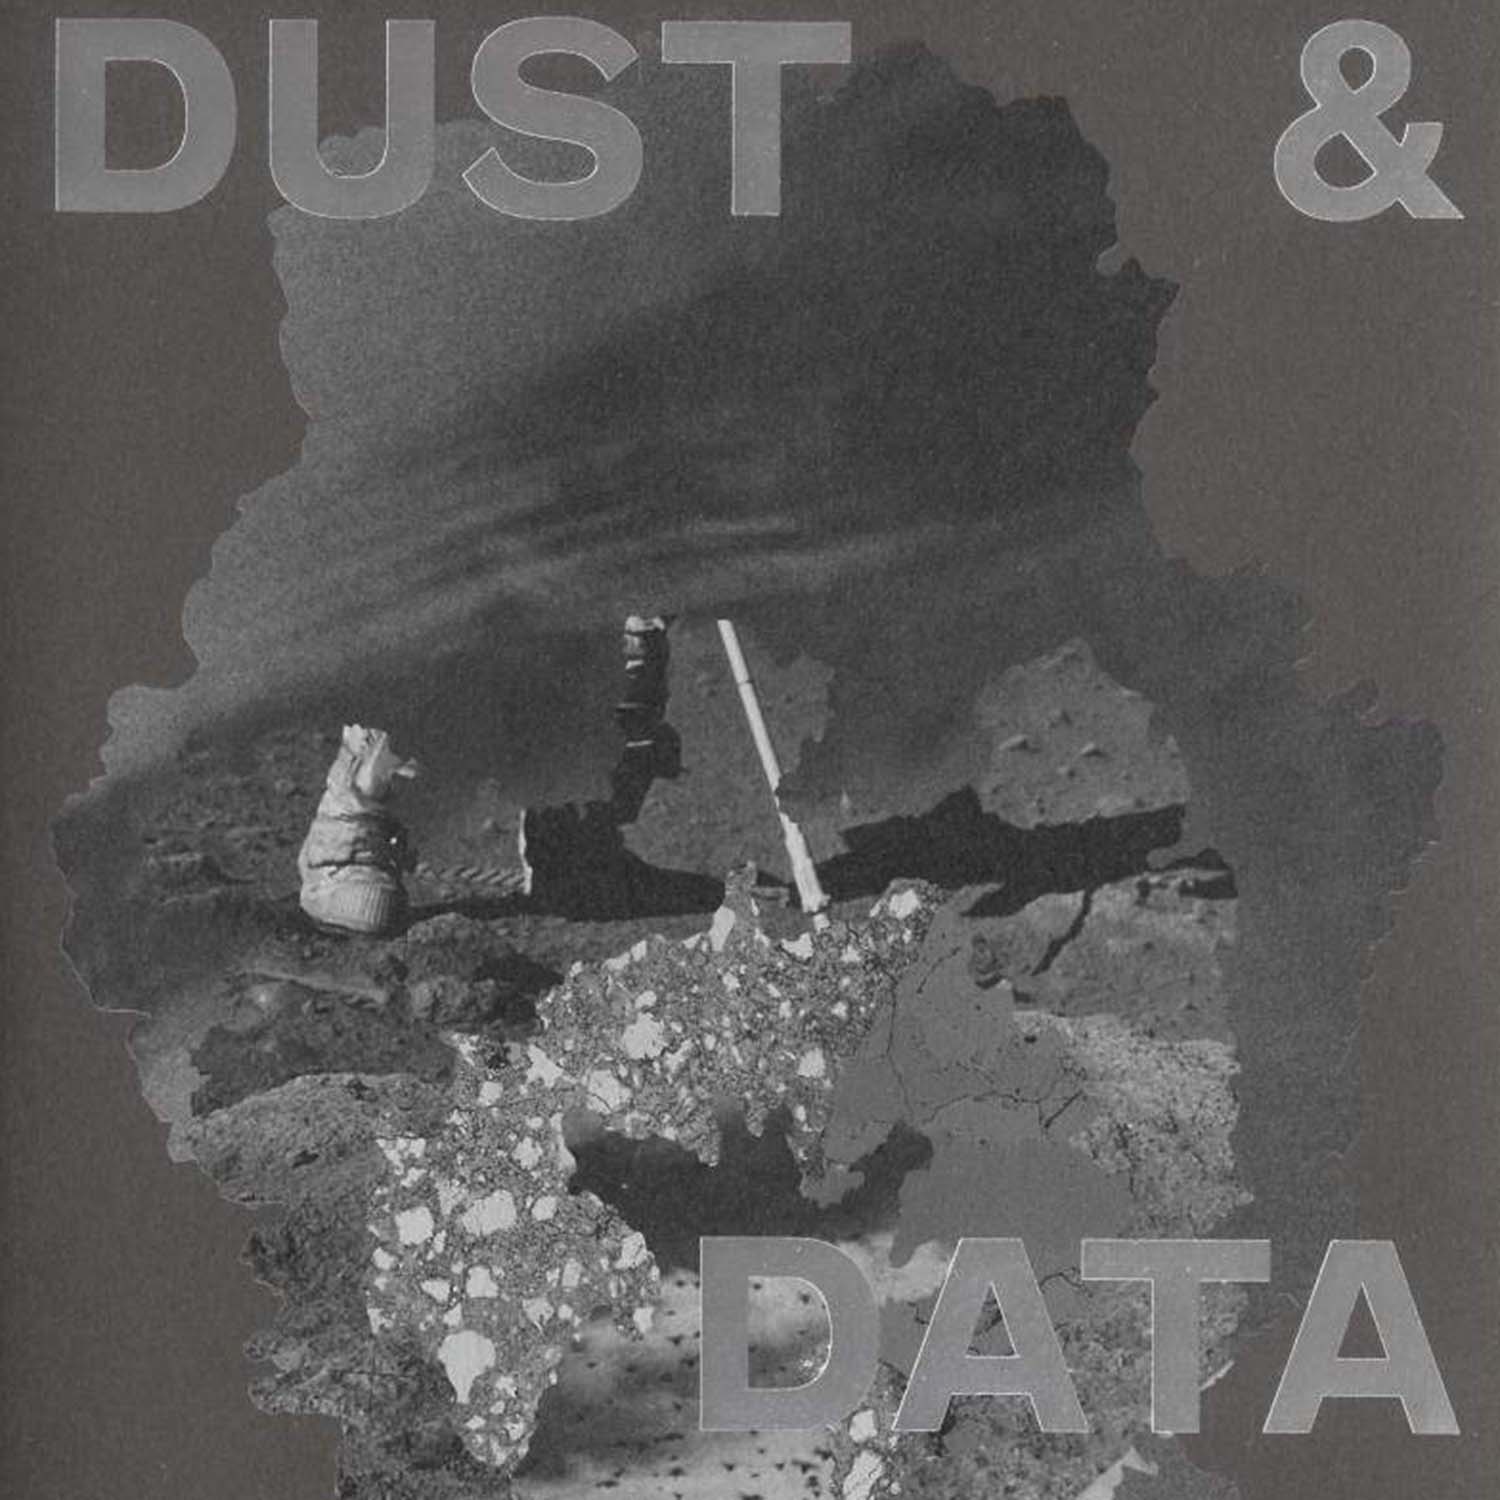 תמונה של אבק ונתונים